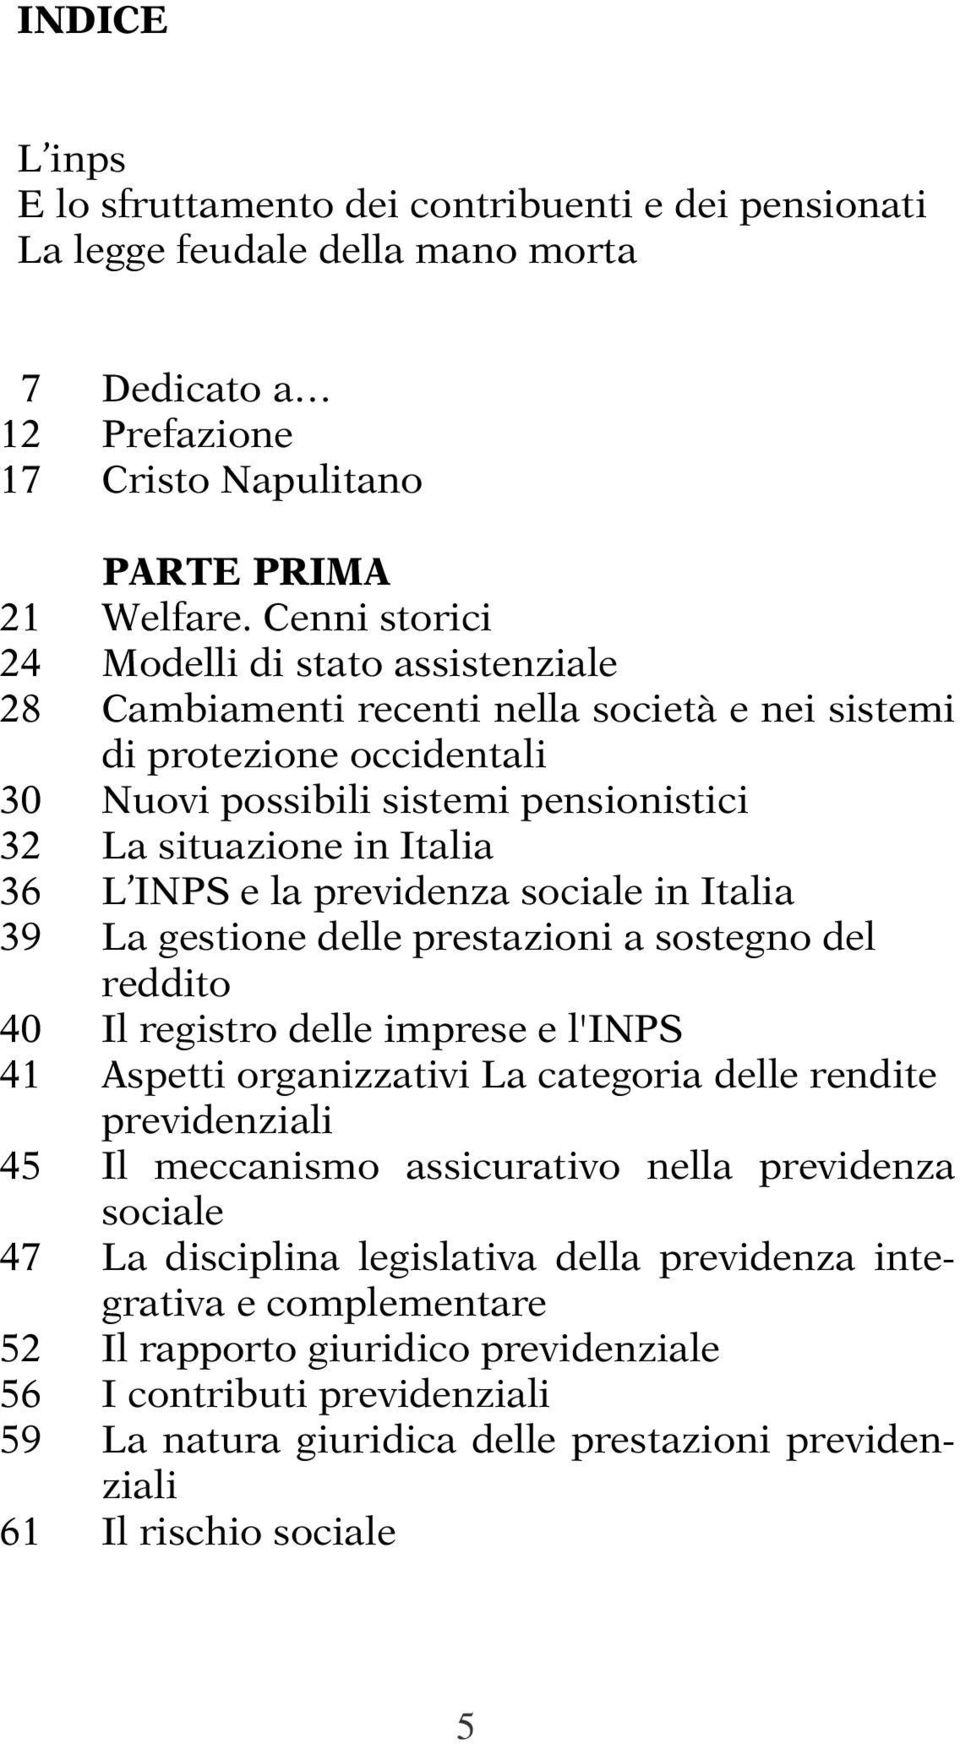 036 L INPS e la previdenza sociale in Italia 039 La gestione delle prestazioni a sostegno del reddito 040 Il registro delle imprese e l'inps 041 Aspetti organizzativi La categoria delle rendite